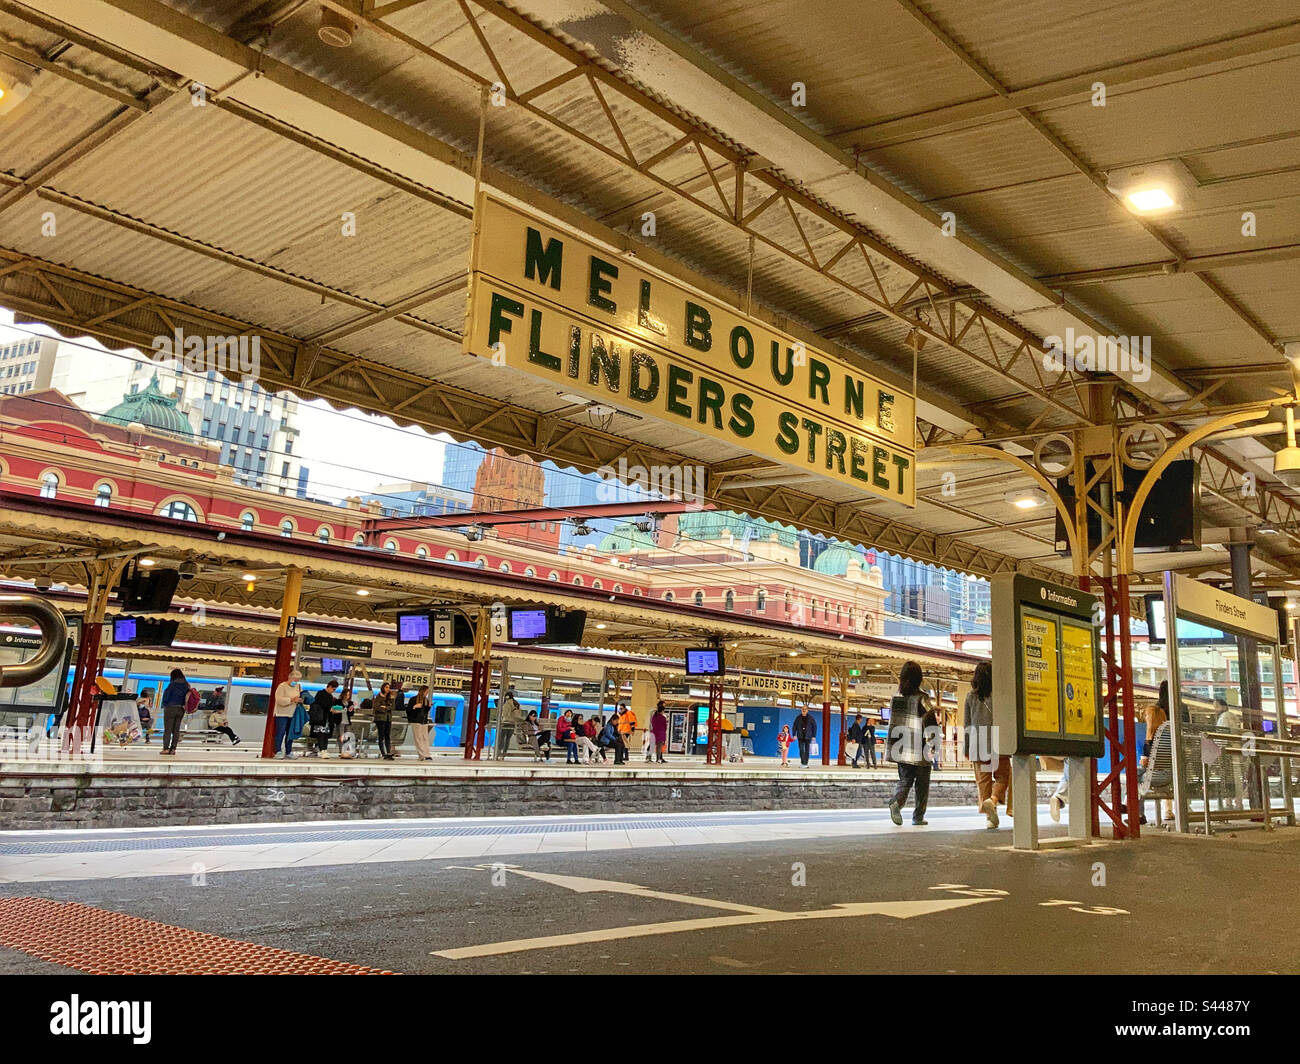 La gare de Flinders Street, Melbourne, Victoria Australie Banque D'Images